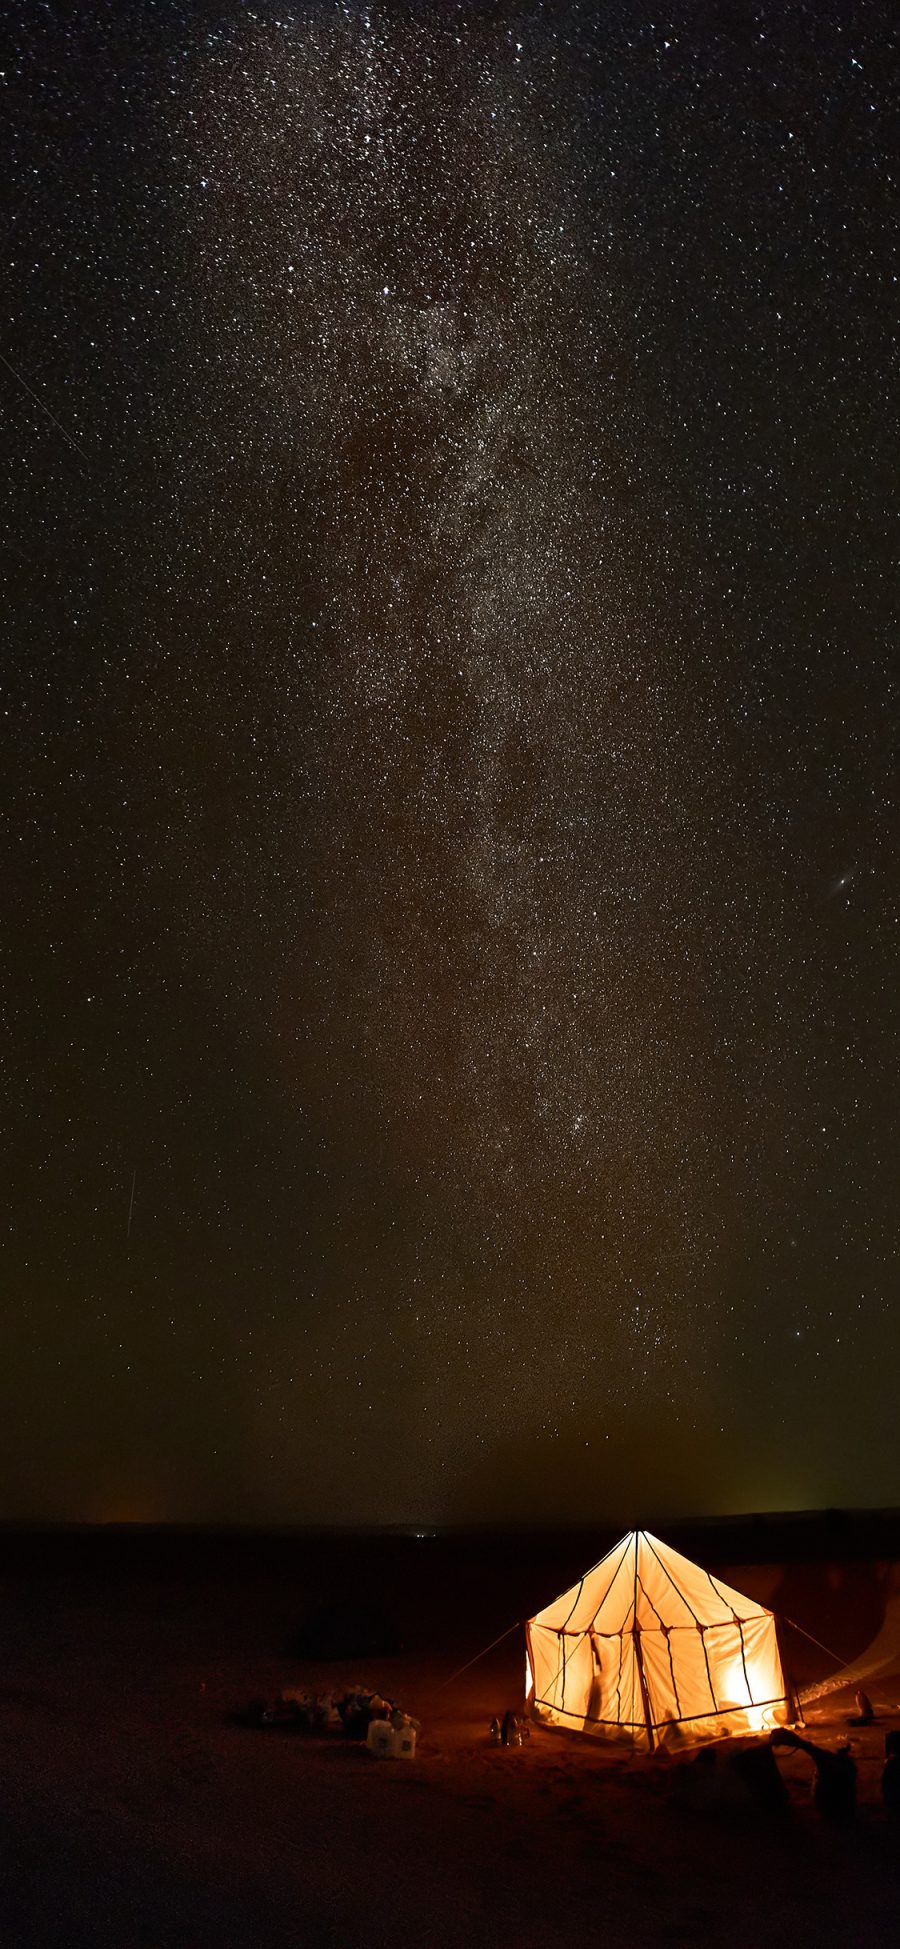 [2436×1125]夜景 帐篷 星空 璀璨 星河 苹果手机壁纸图片